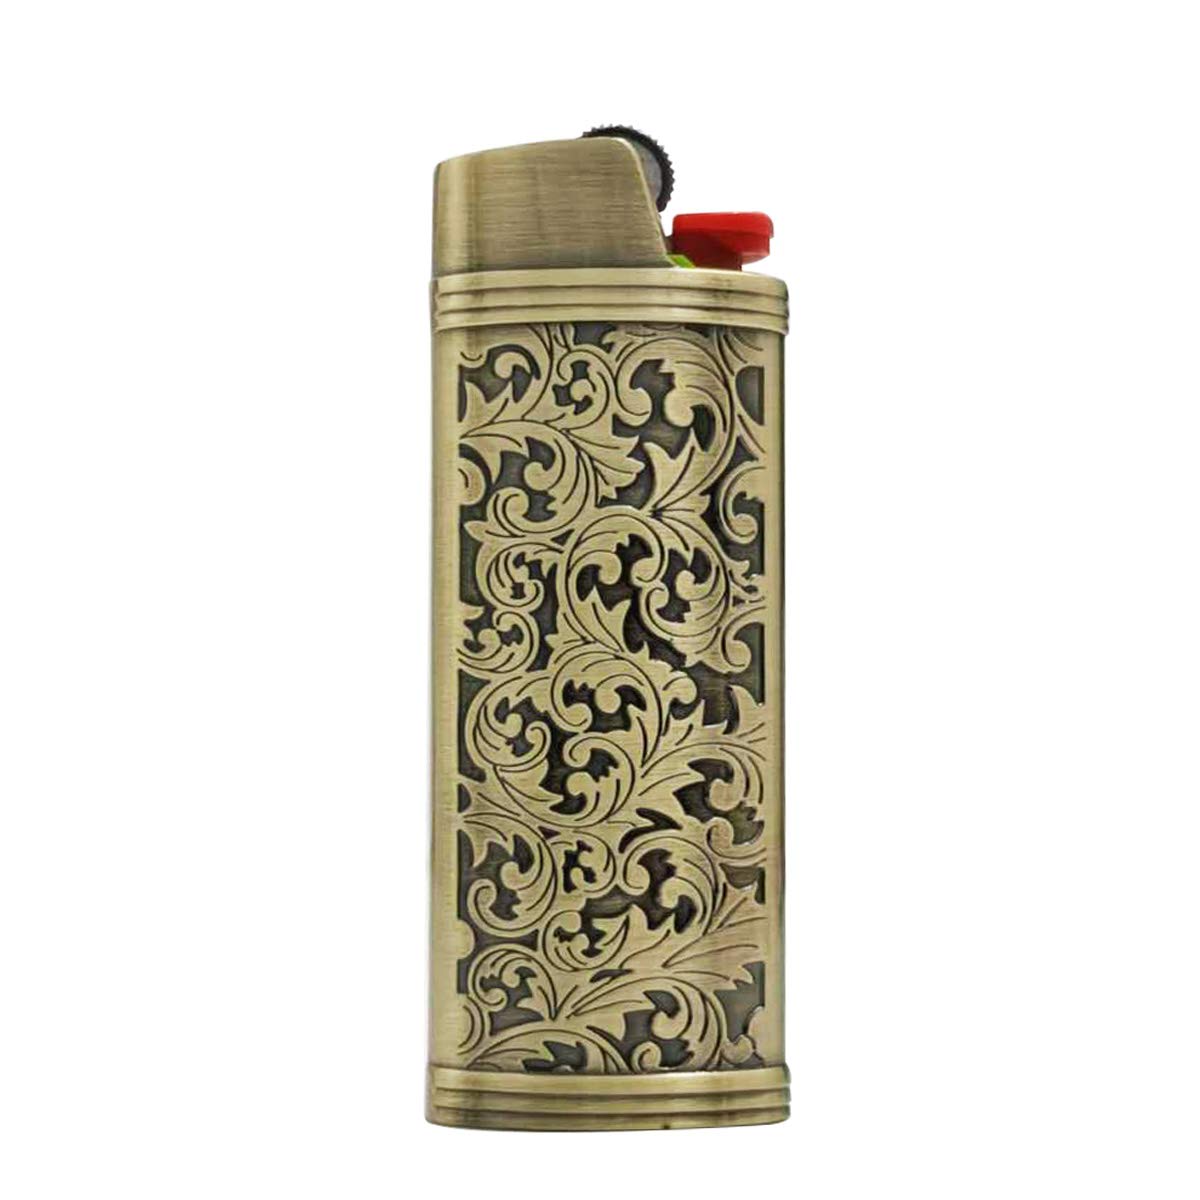  Lucklybestseller Lighter Case Cover Holder for BIC Full Size  Lighter (Gold) : Health & Household